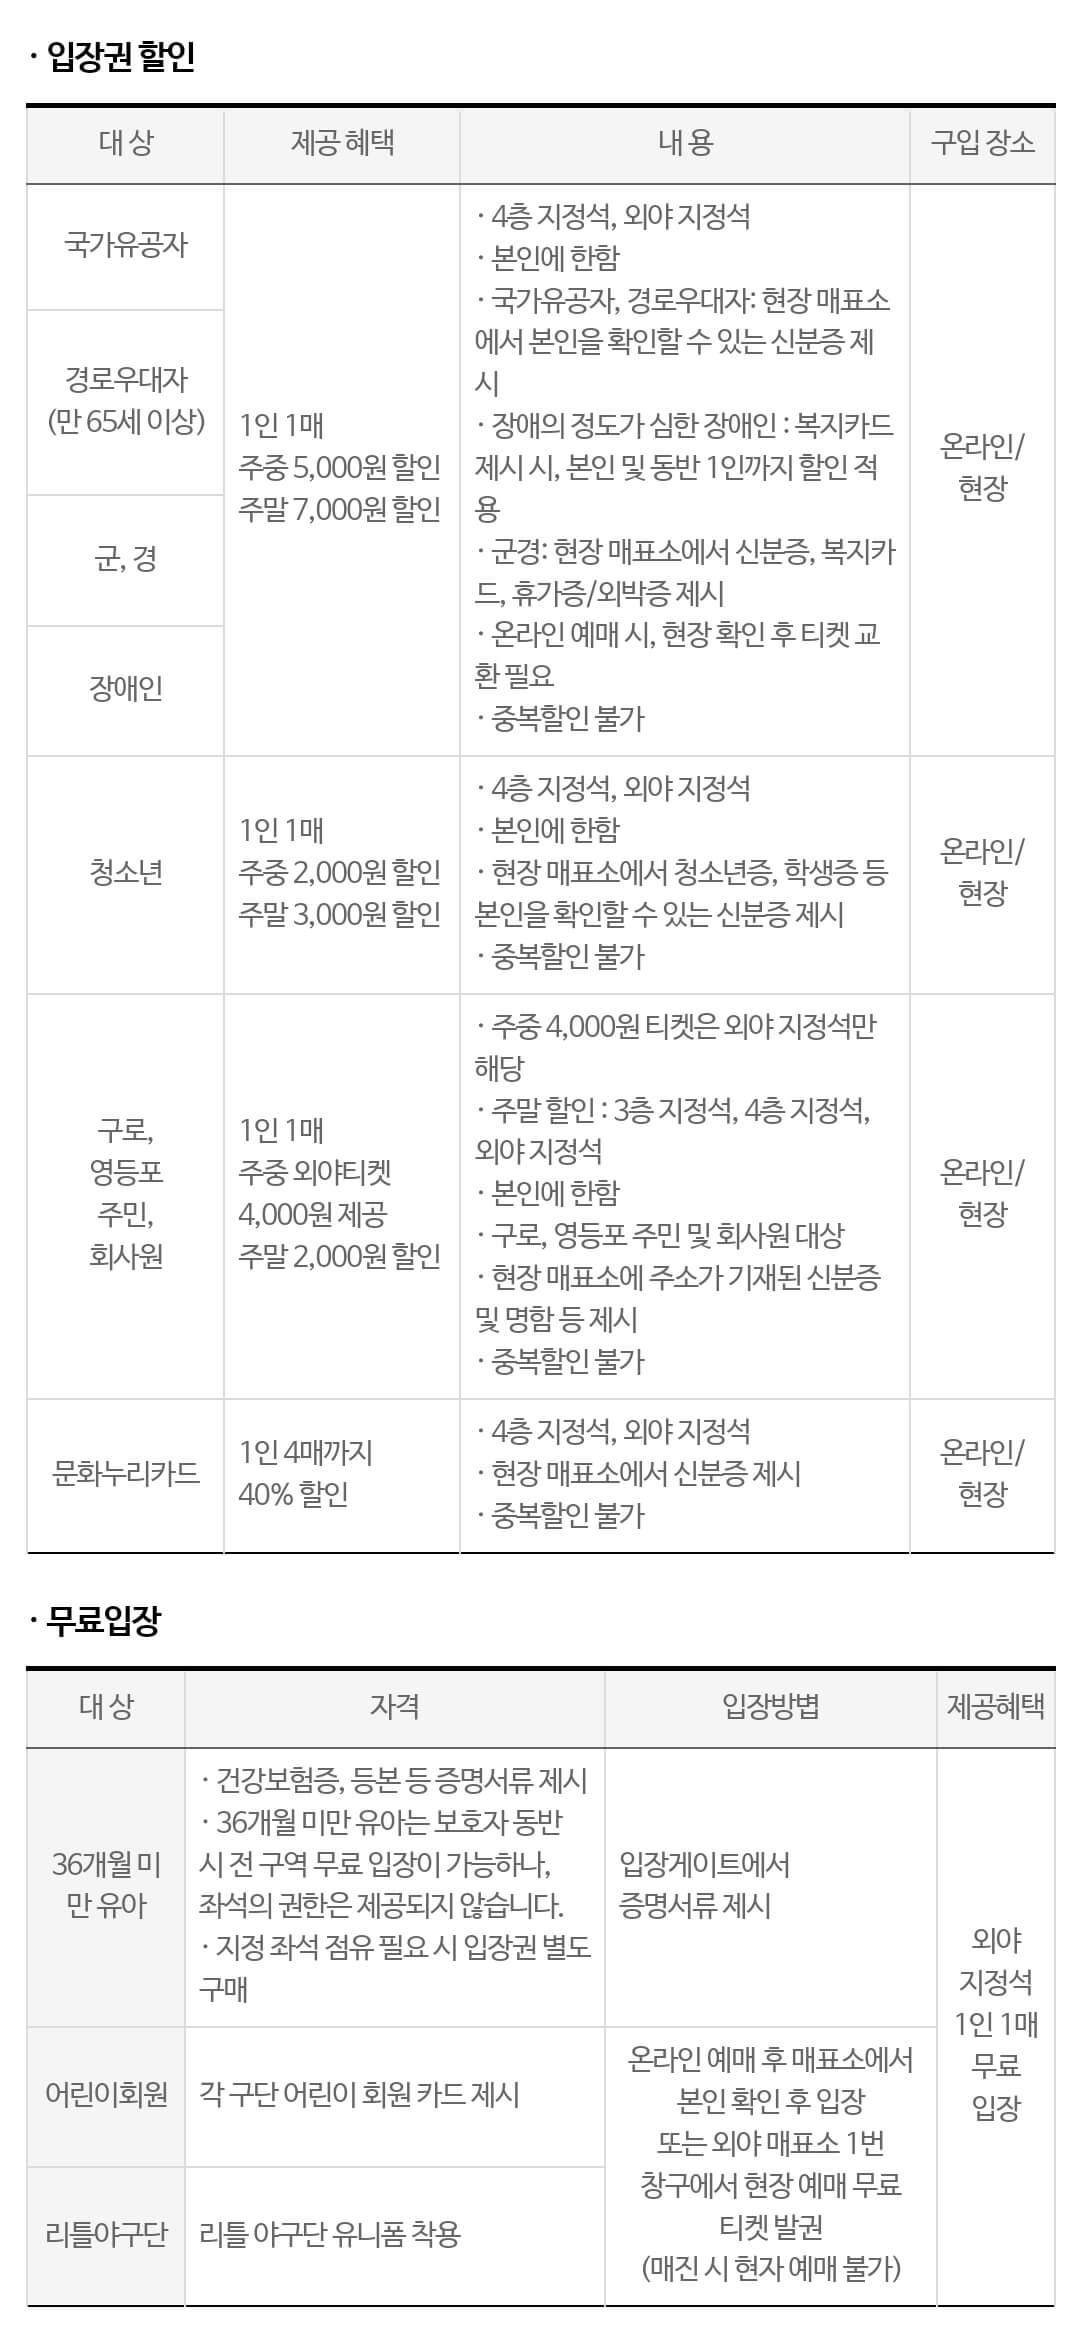 키움히어로즈 서울 고척스카이돔 좌석 배치도&#44; 입장권 요금&#44; 티켓 가격 할인